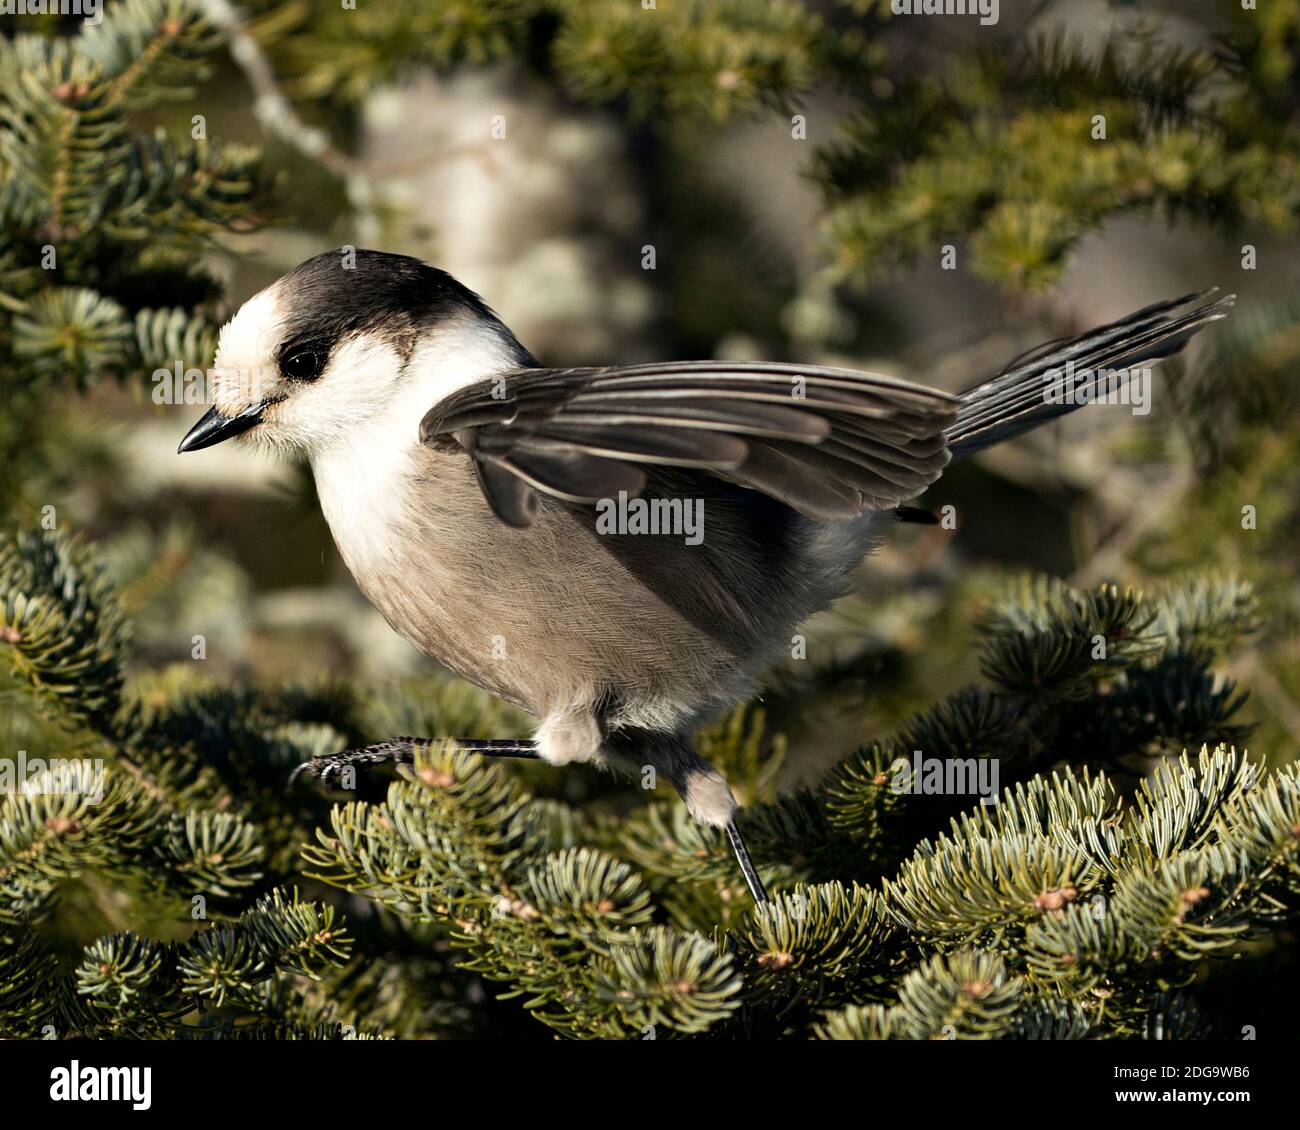 Vista ravvicinata del profilo Gray Jay appollaiato su un ramo di abeti nel suo ambiente e habitat, con piumaggio grigio e coda di uccelli. Immagine. Fig Foto Stock